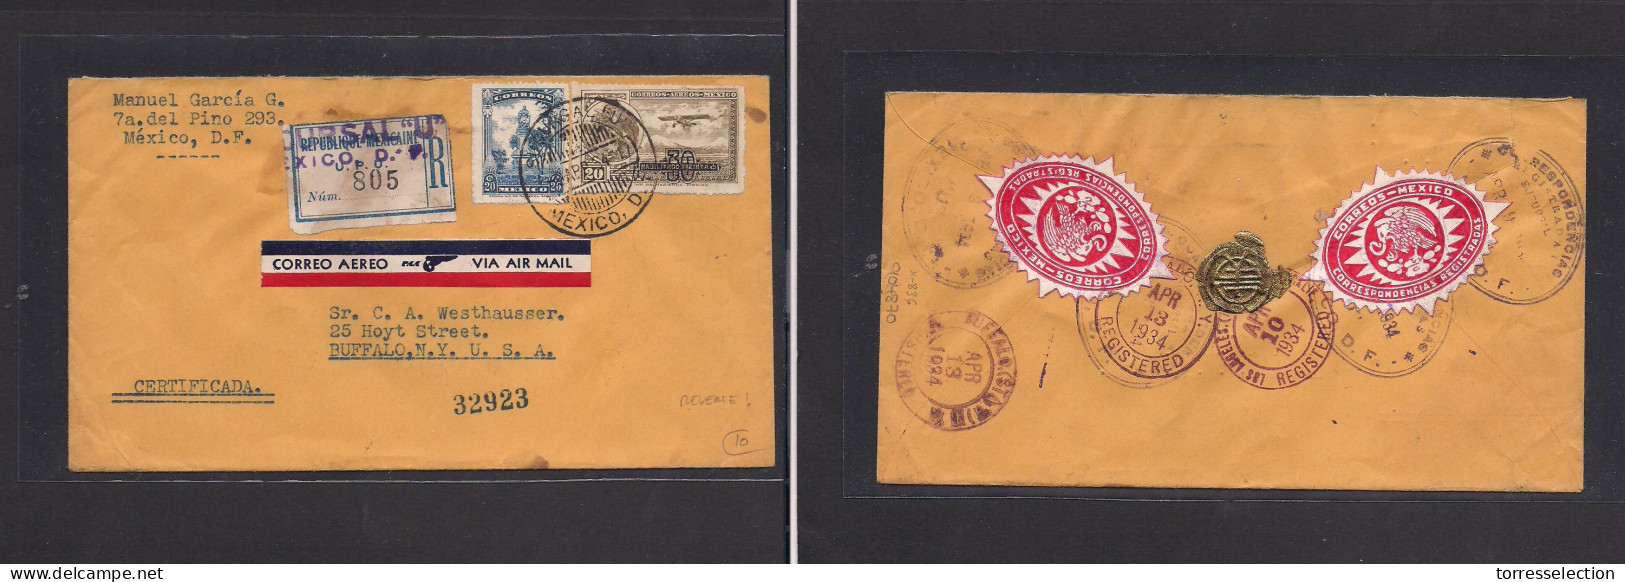 MEXICO. Mexico - Cover - 1964 DF To USA Buffalo NY Air Mult Fkd Env, Reverse Seals. Easy Deal. XSALE. - Mexique